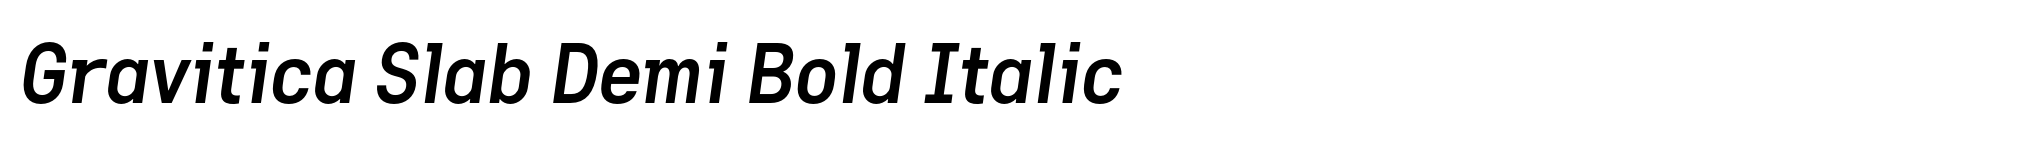 Gravitica Slab Demi Bold Italic image